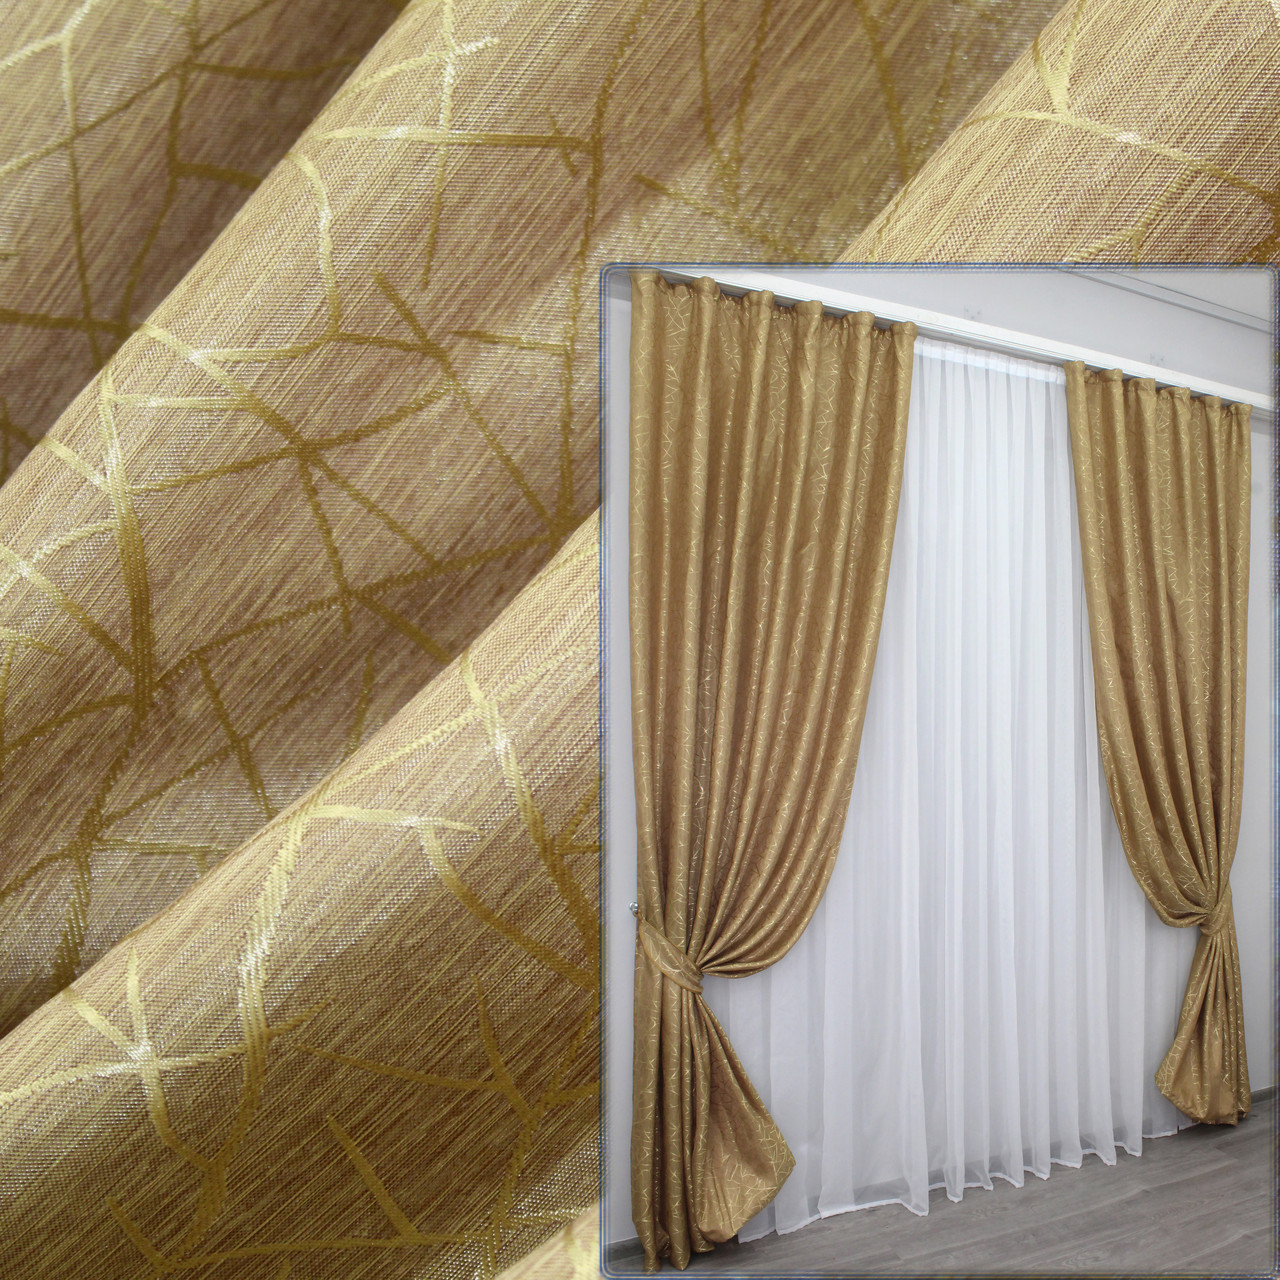 Комплект (2шт. 1х2,7м) готових жакардових штор, колекція "Савана". Колір золотистий. Код 672ш 31-379, фото 1